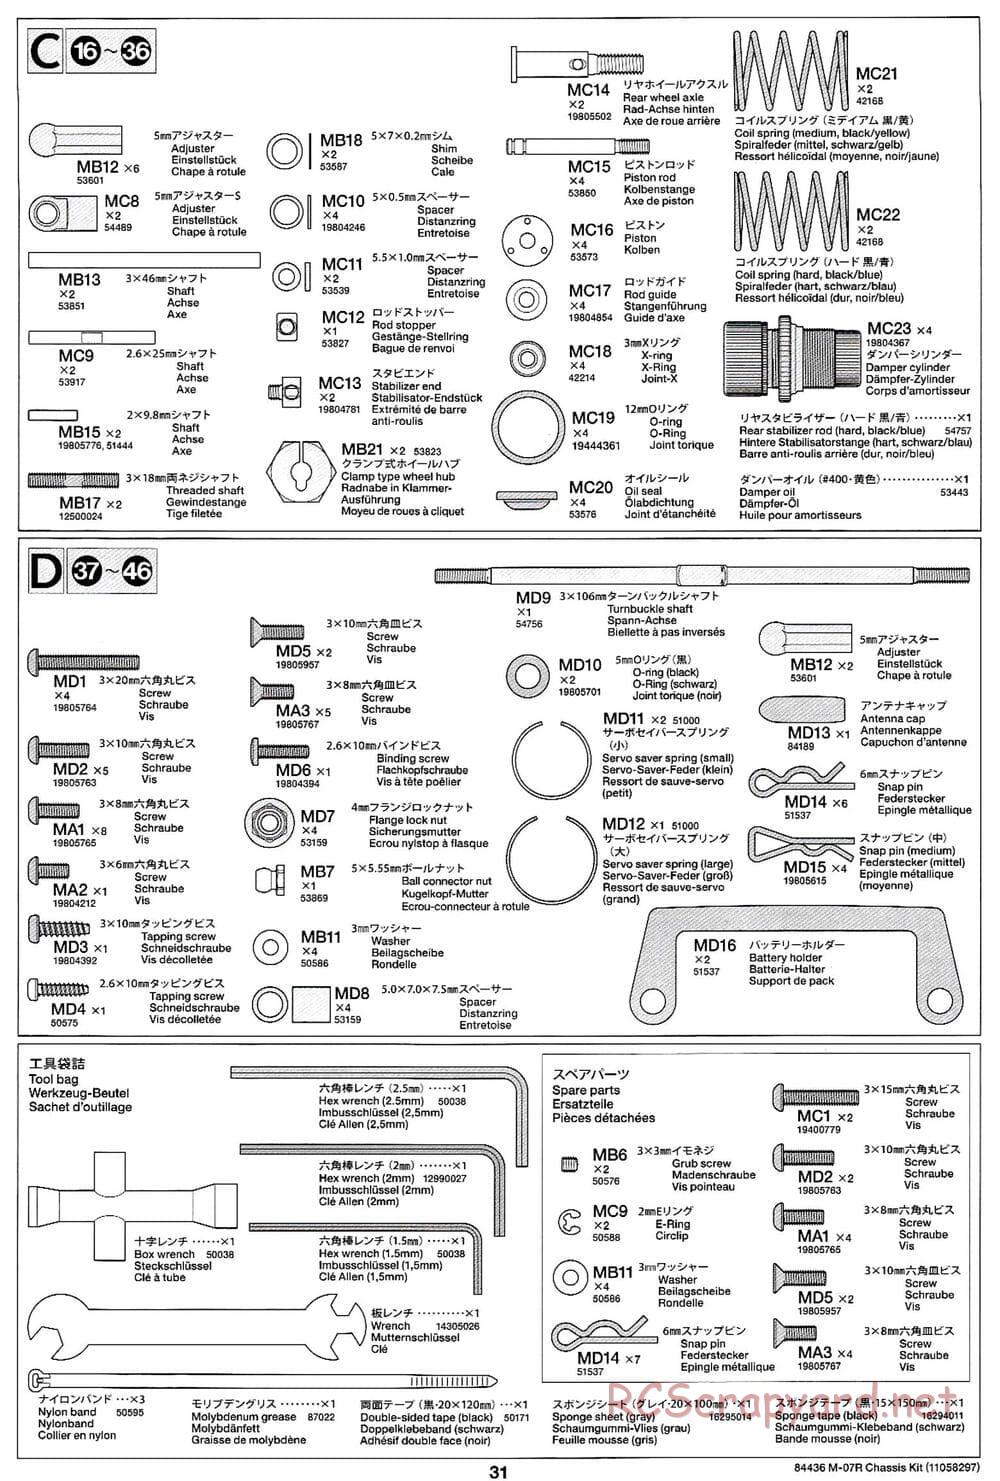 Tamiya - M-07R Chassis - Manual - Page 31